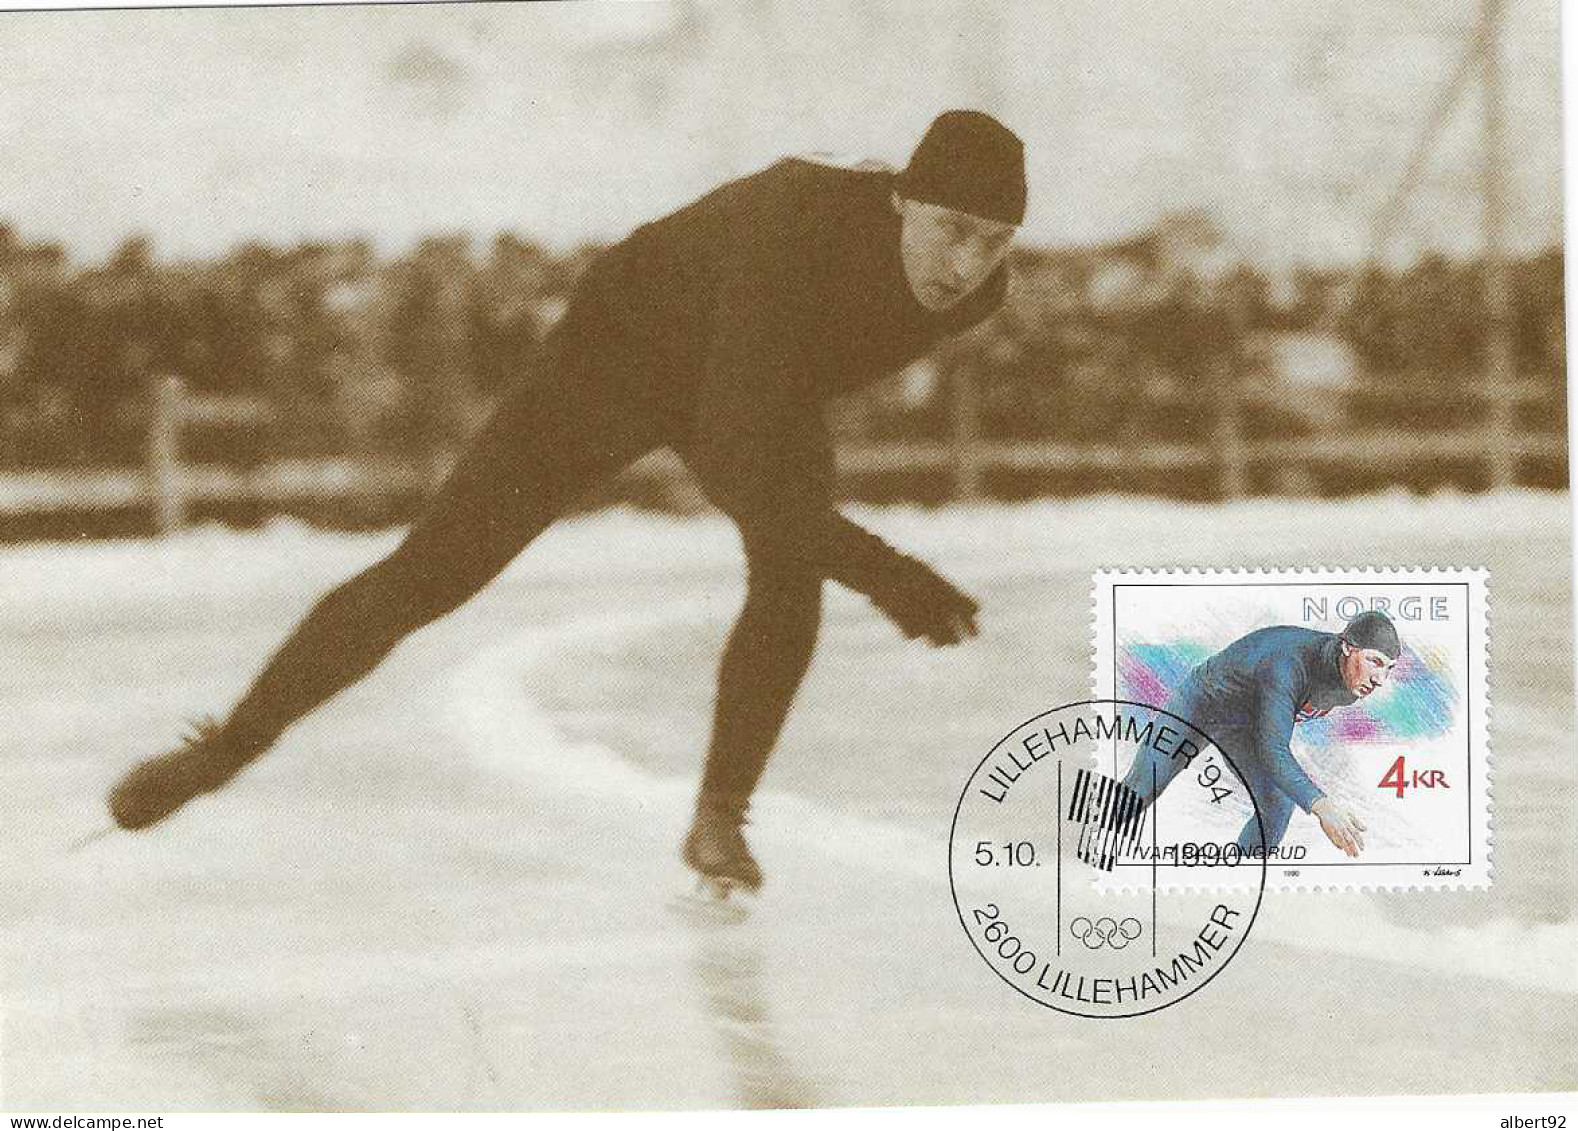 1990 Hommage à Ivar Ballangrud Patinage De Vitesse: Médaillé Or Aux Jeux Olympiques De Saint Moritz 1928 (5000m) - Winter 1928: St. Morits